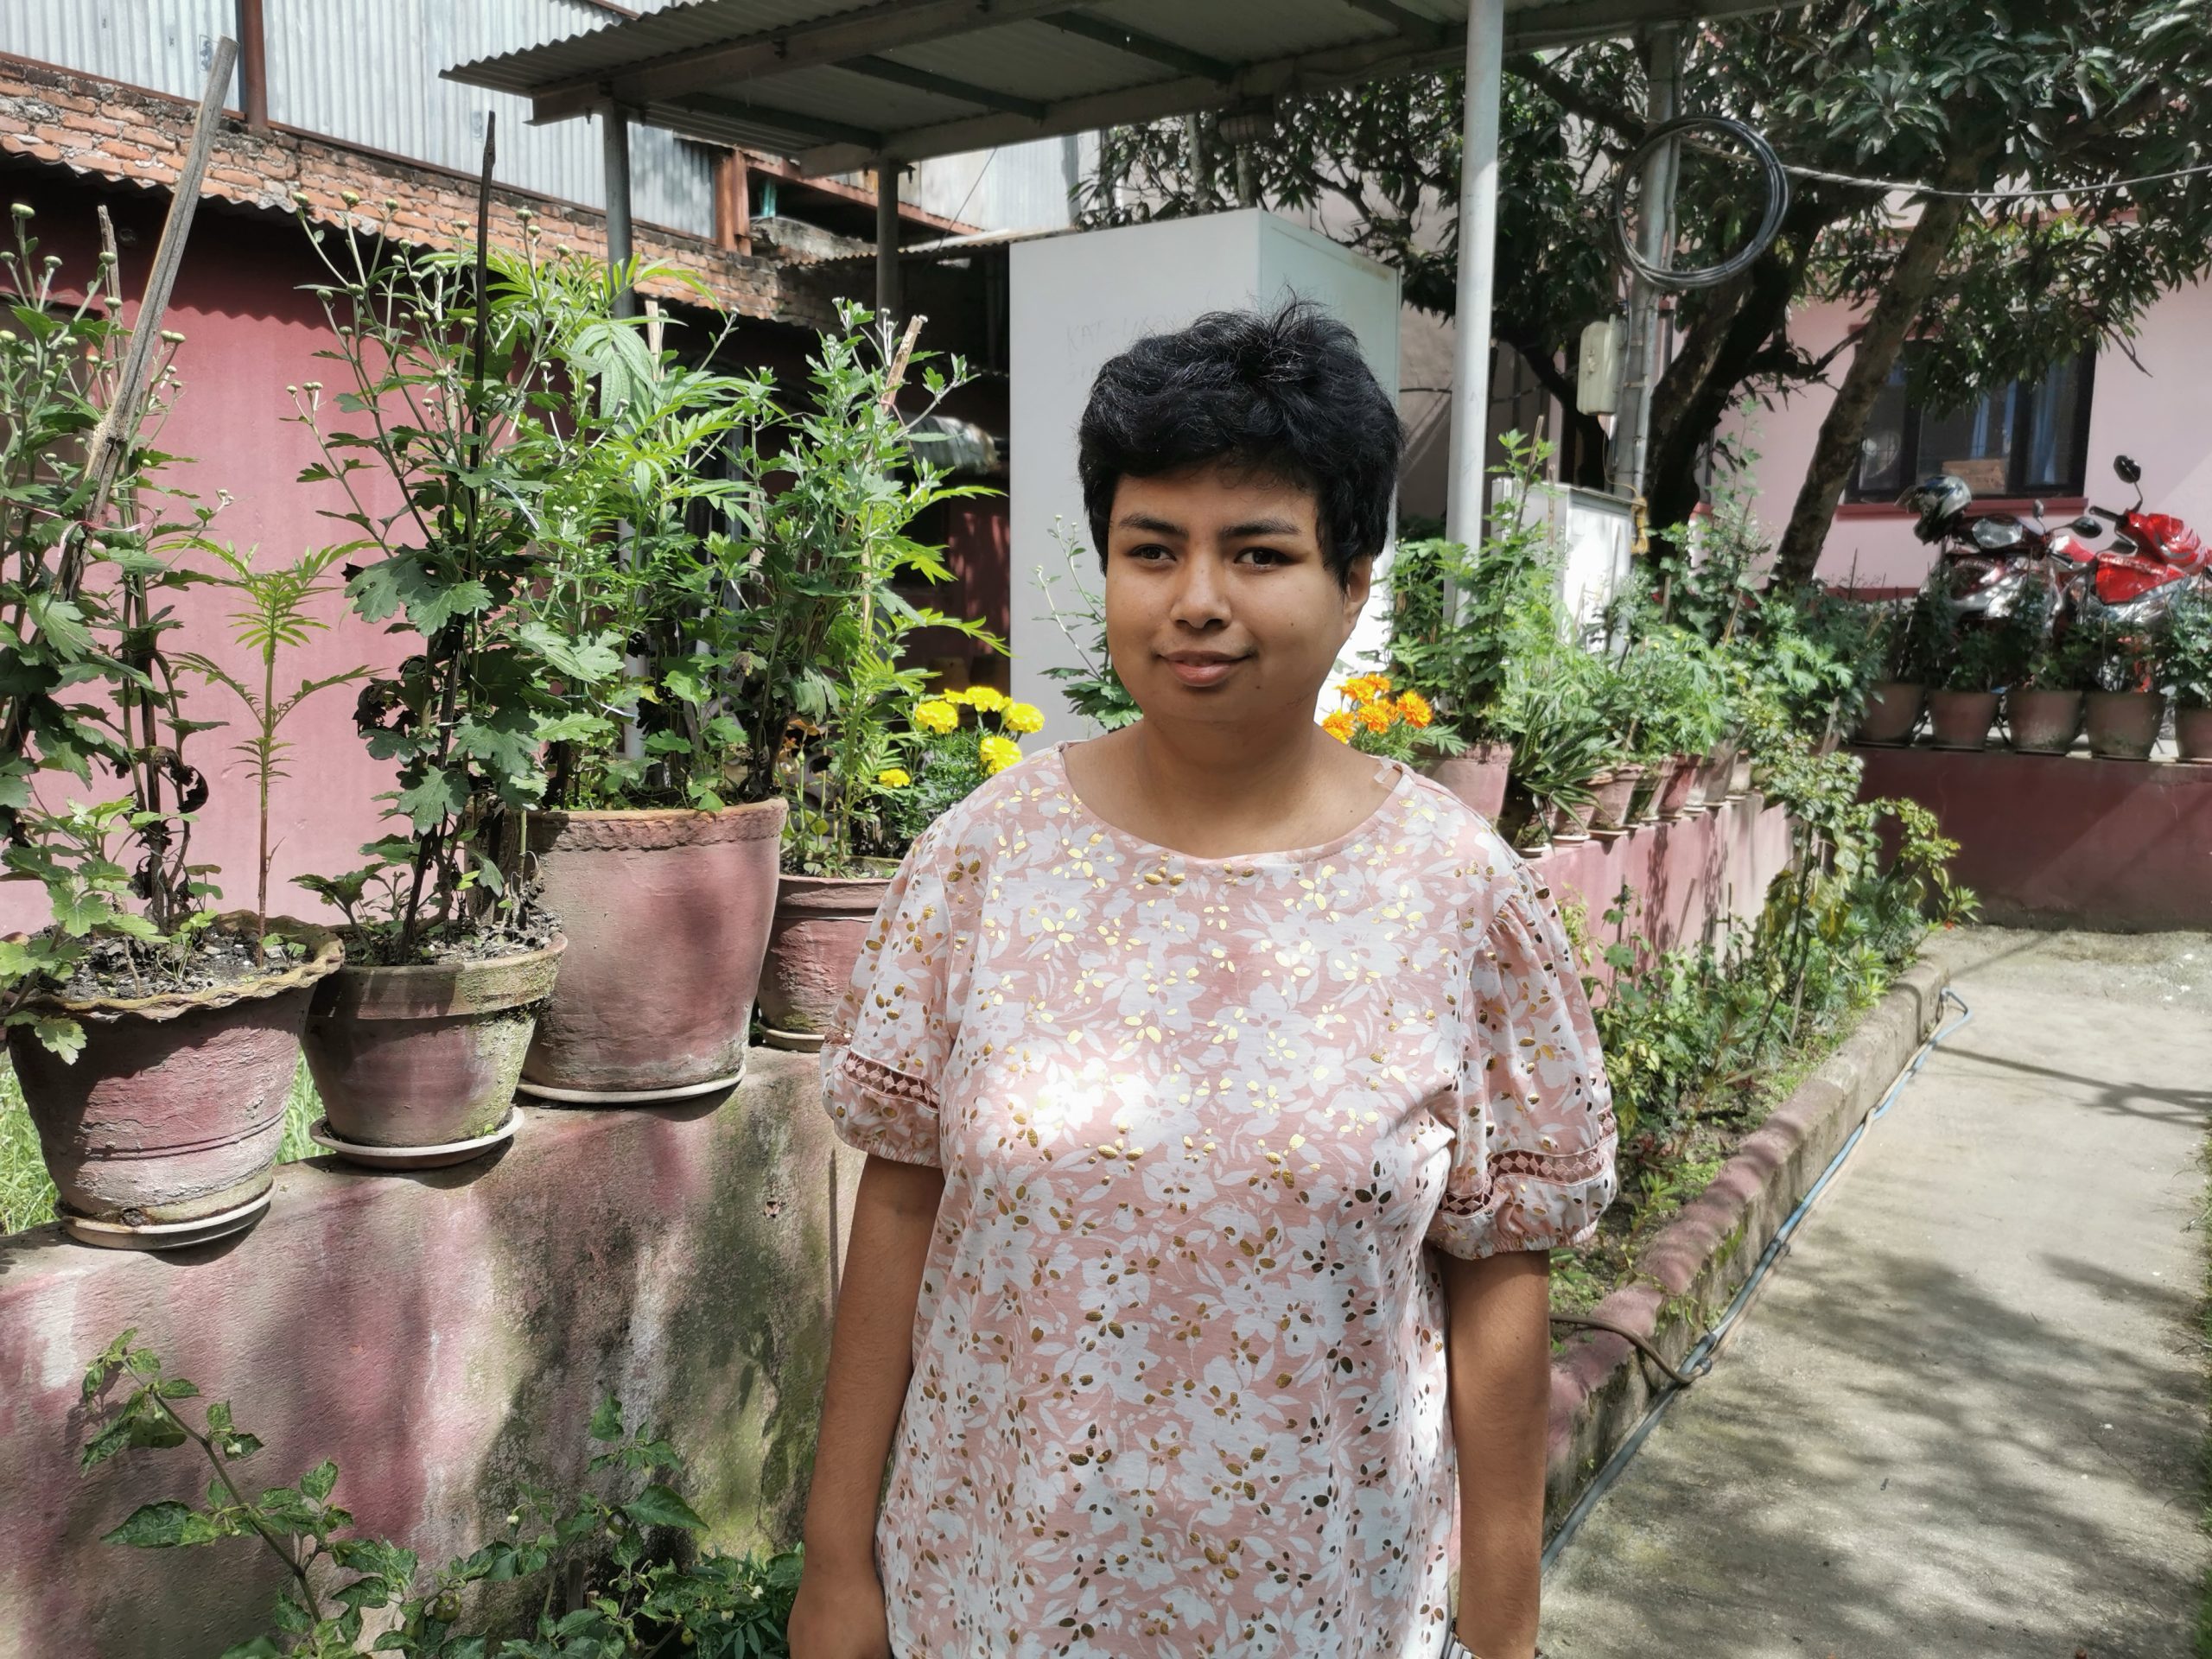 Ayushma está de pie en un jardín con plantas en macetas verdes detrás de ella, lleva un suéter rosa y el pelo corto y negro.